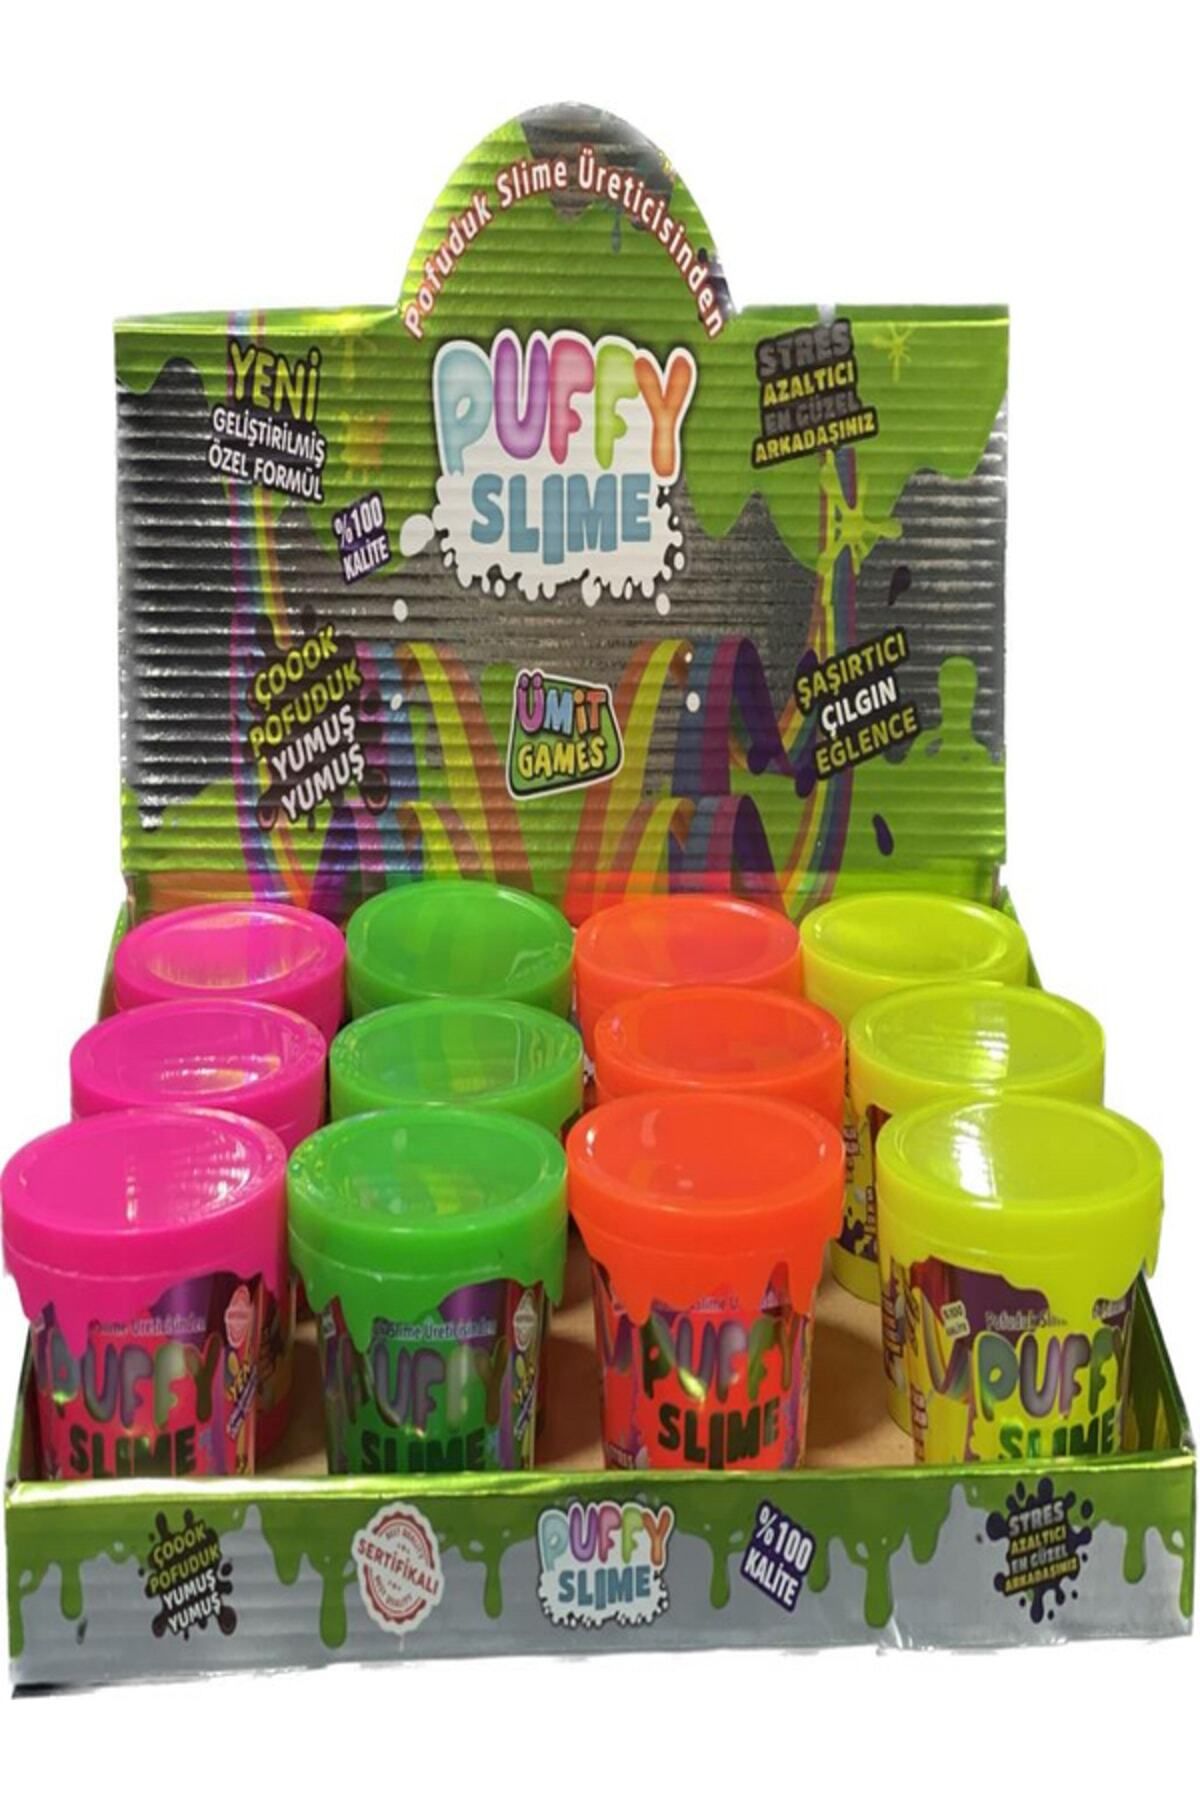 ümit toys Puffy Slime Yeni Trend Slime - 2 Adet Hazır Slime 4 Farklı Renkler 120 Gr Slaym Pop Tube